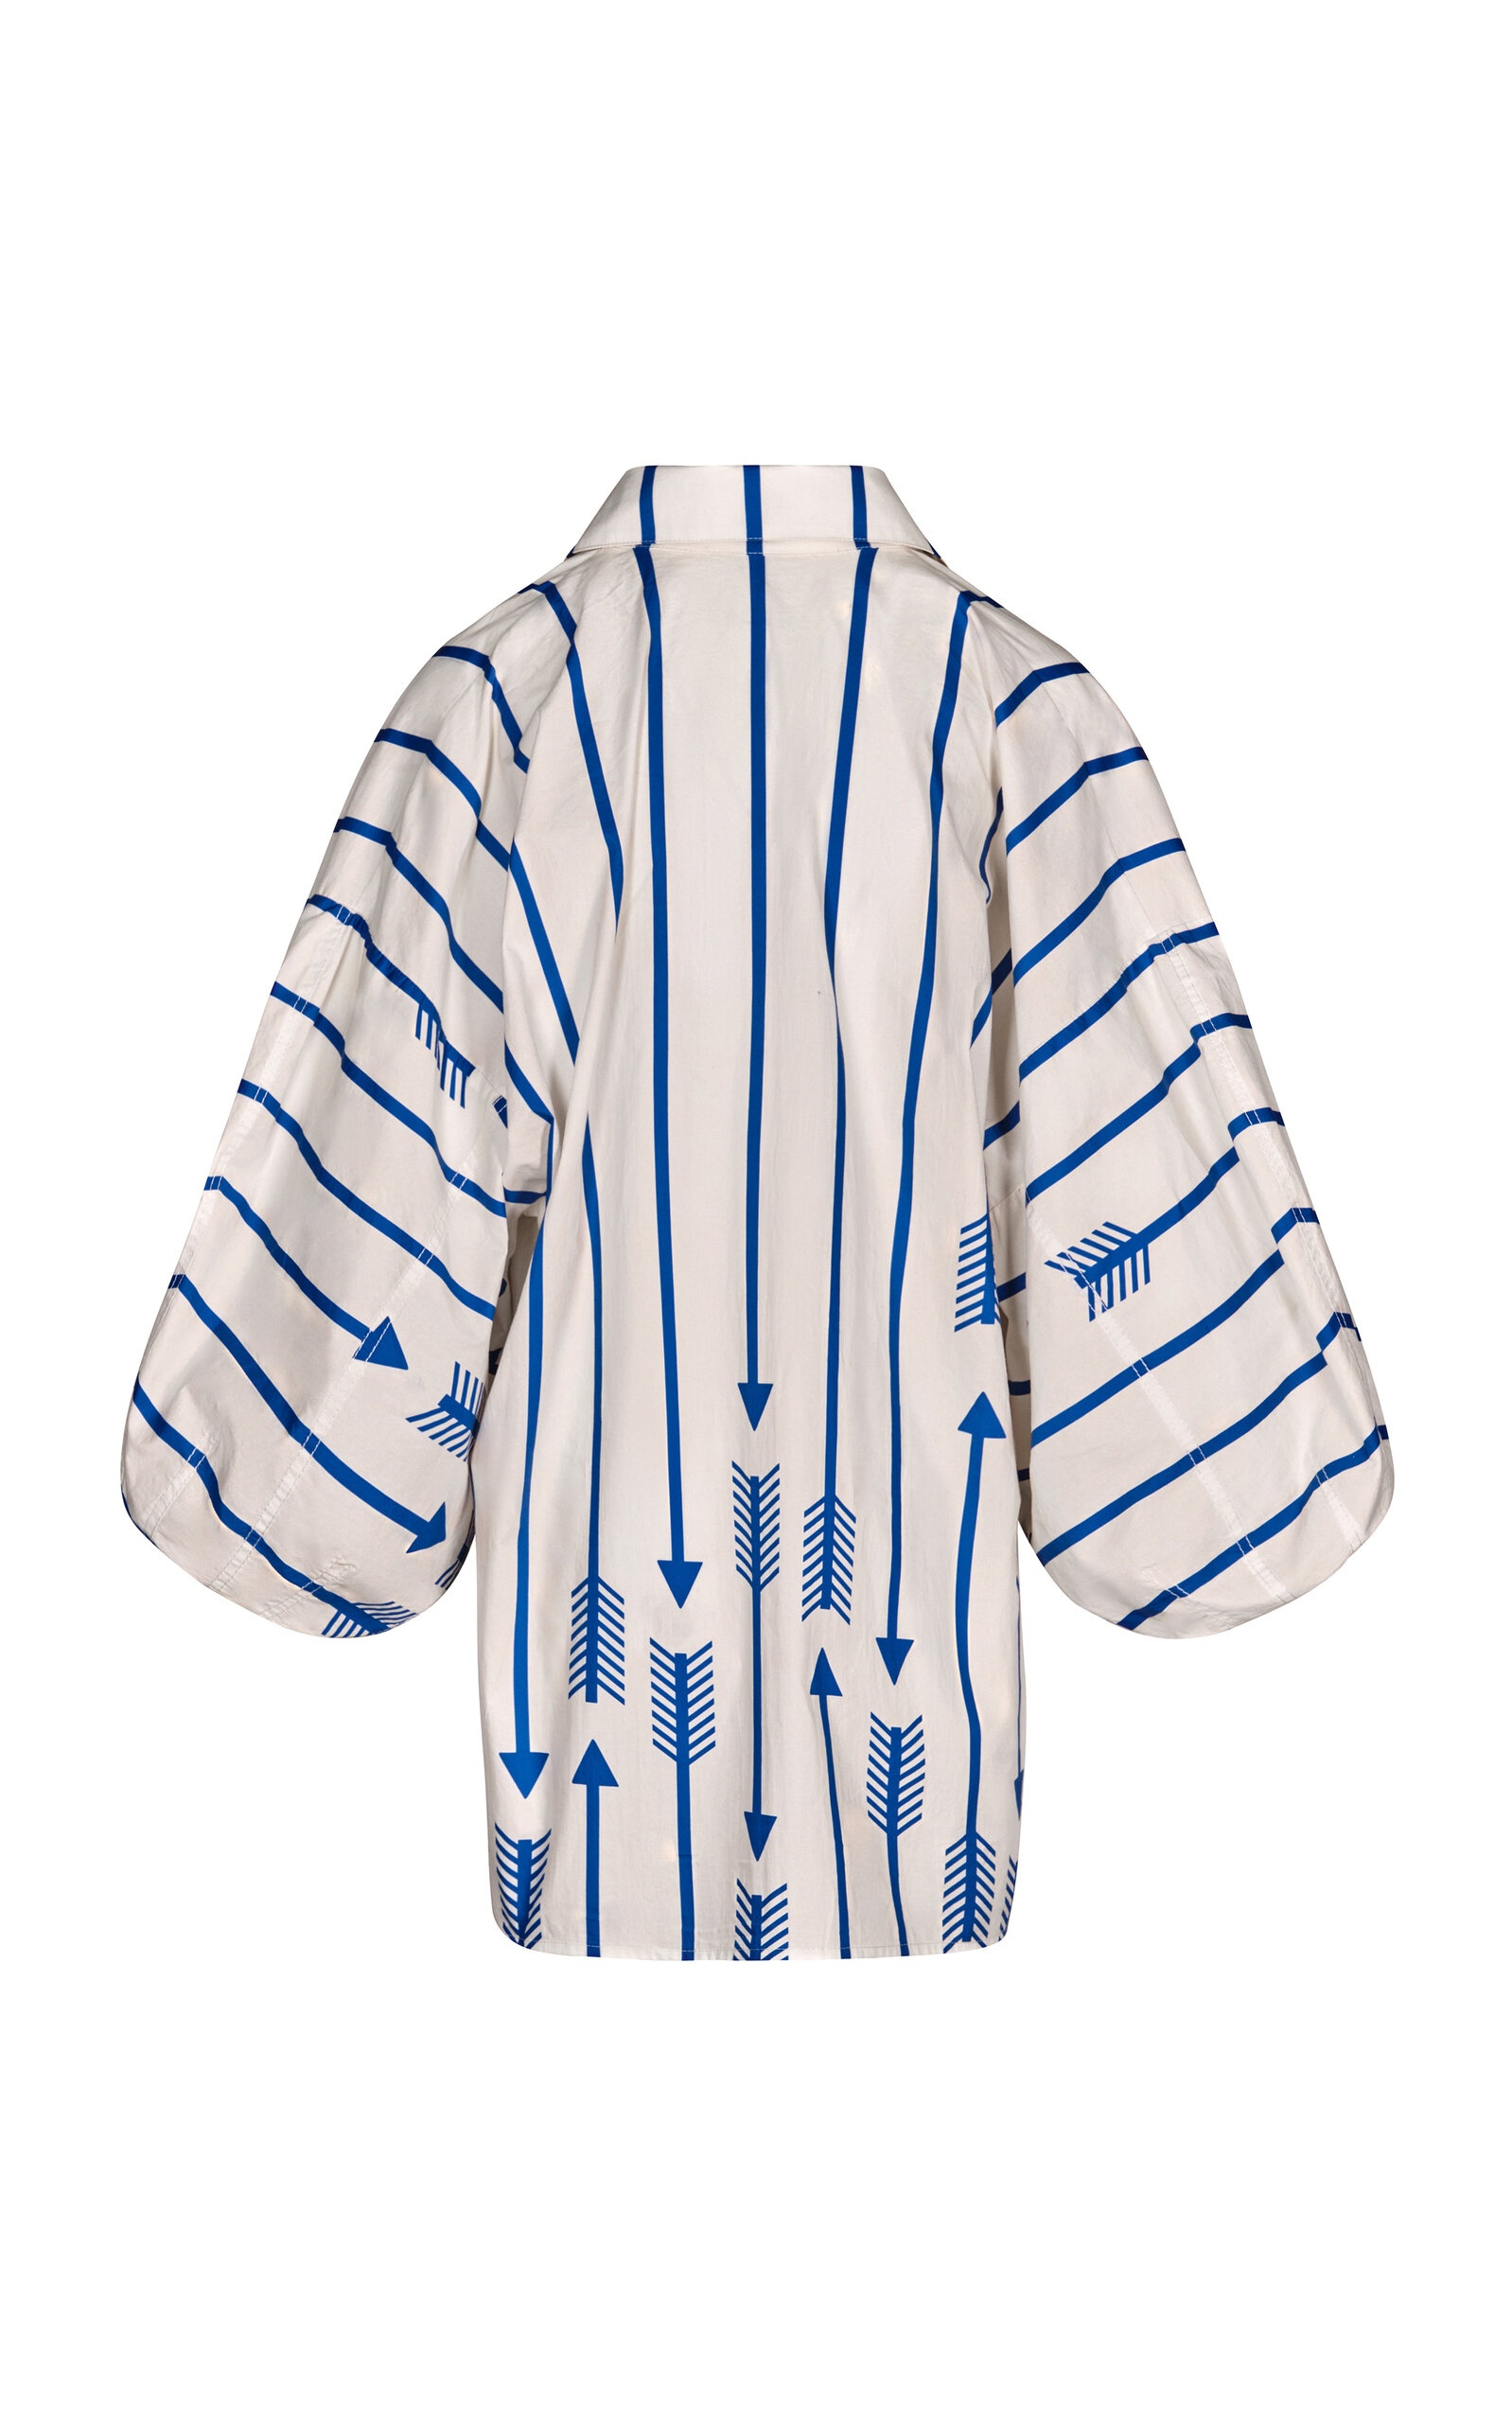 Flechada Striped Cotton Shirt stripe - 5